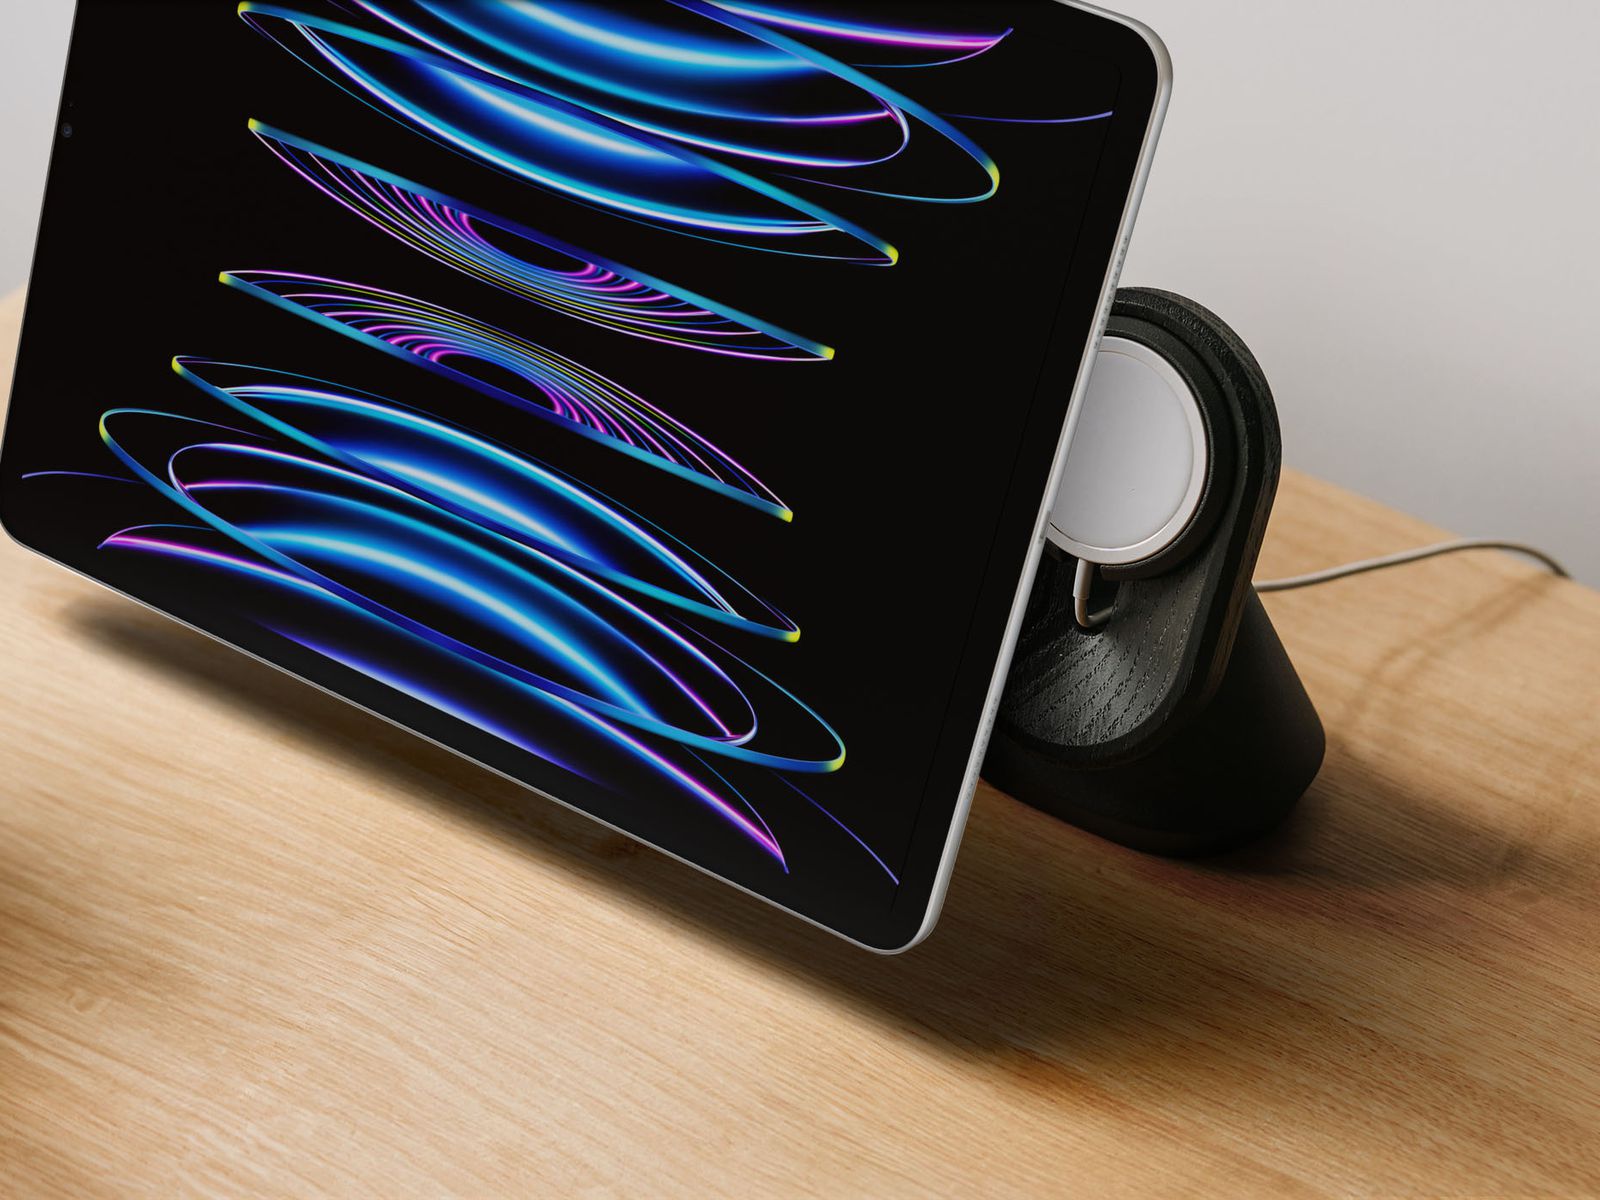 Next iPad Pro Might Support MagSafe Charging - MacRumors